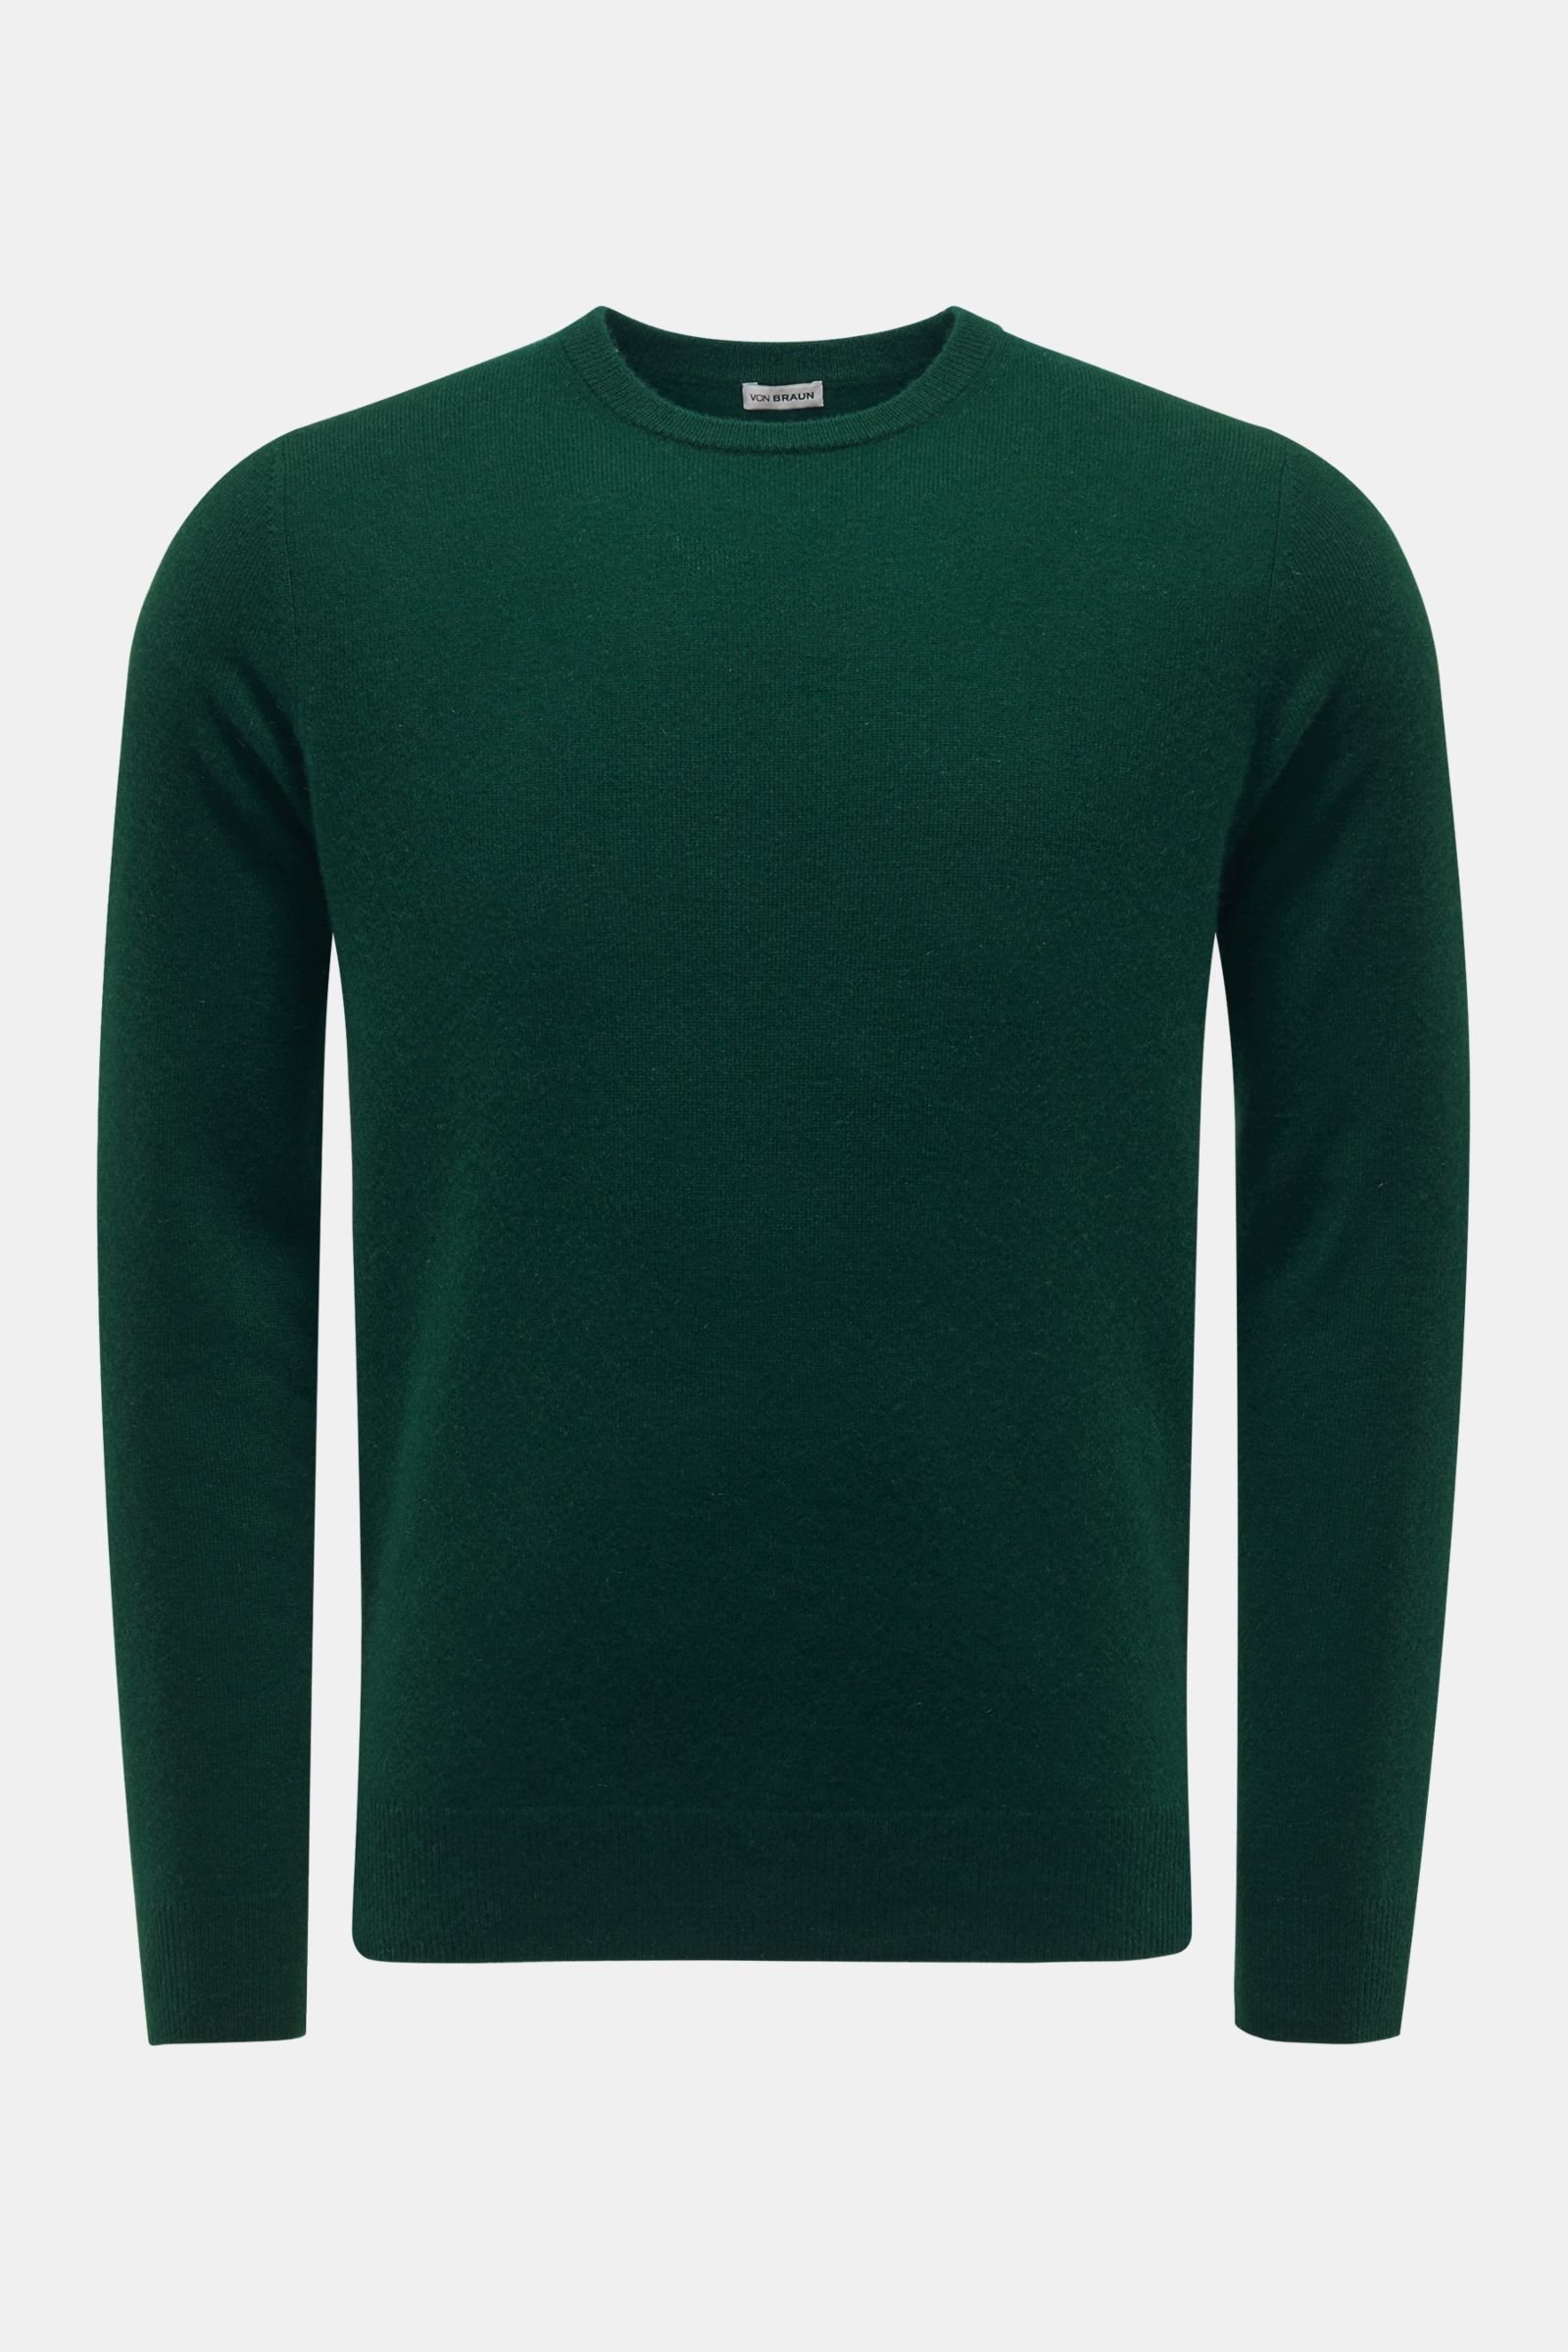 Cashmere Rundhals-Pullover dunkelgrün